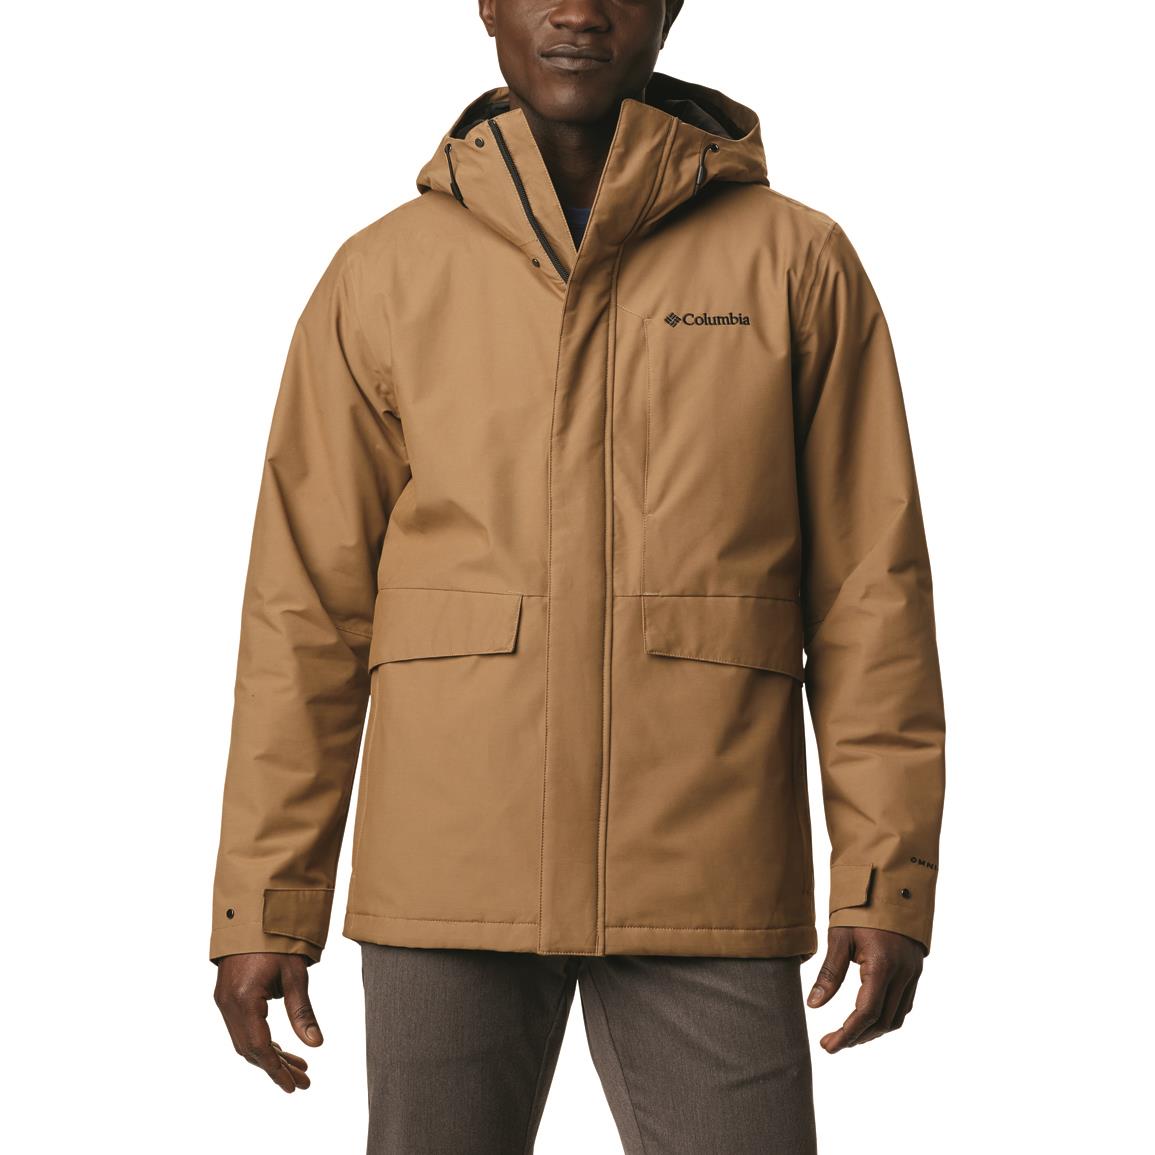 Columbia Men's Firwood Waterproof Insulated Jacket, Delta